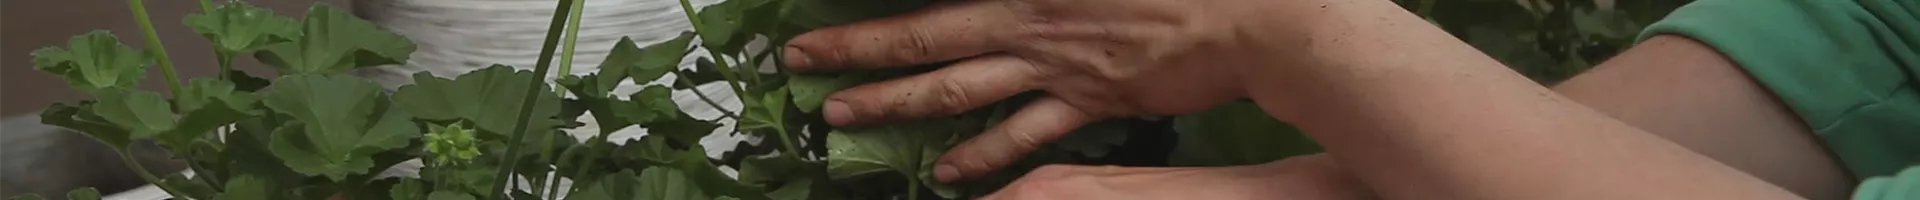 Geranien - Einpflanzen in einen Balkonkasten (thumbnail).jpg